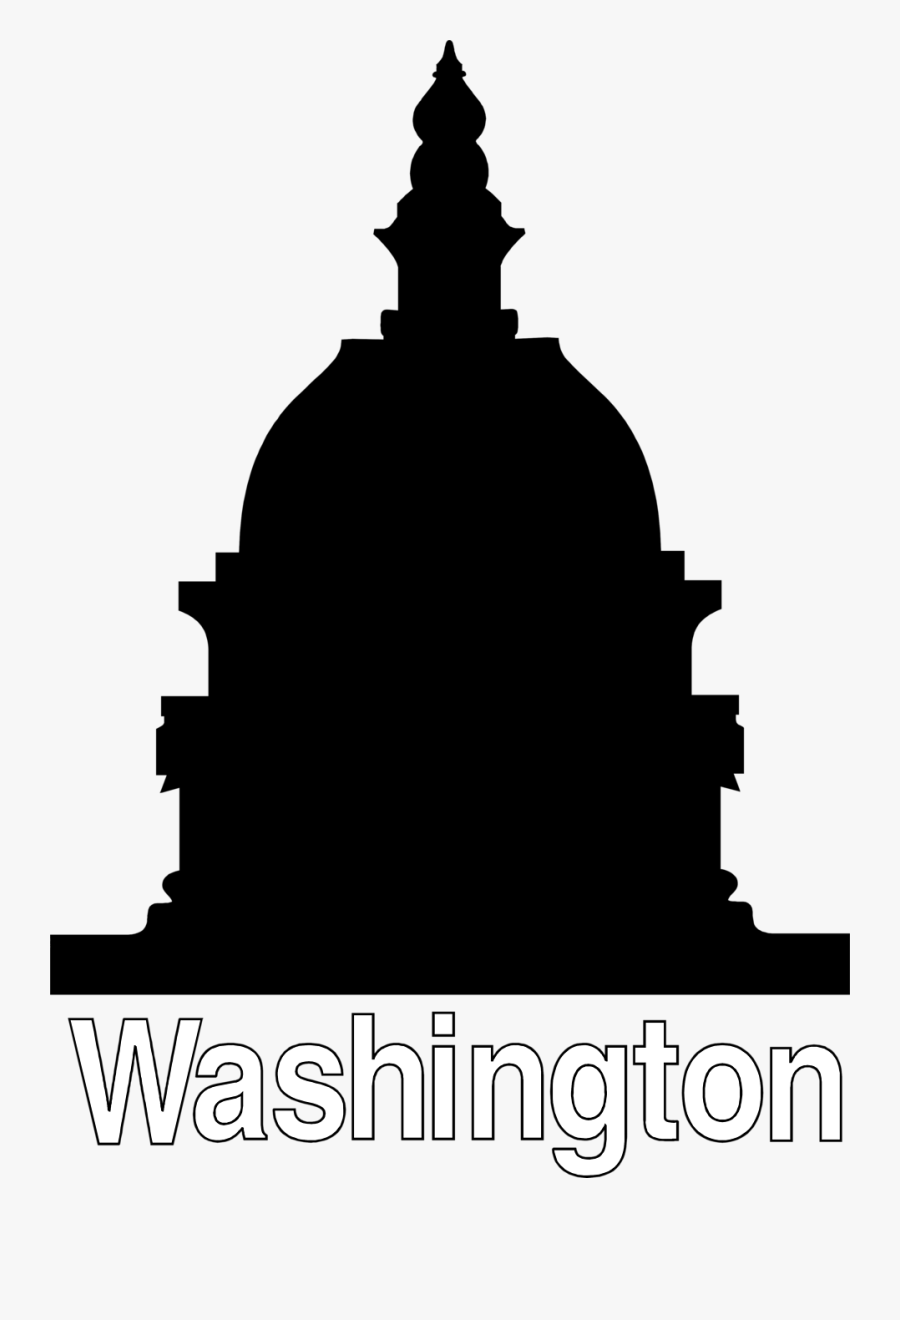 Washington - Capitol Building Silhouette, Transparent Clipart